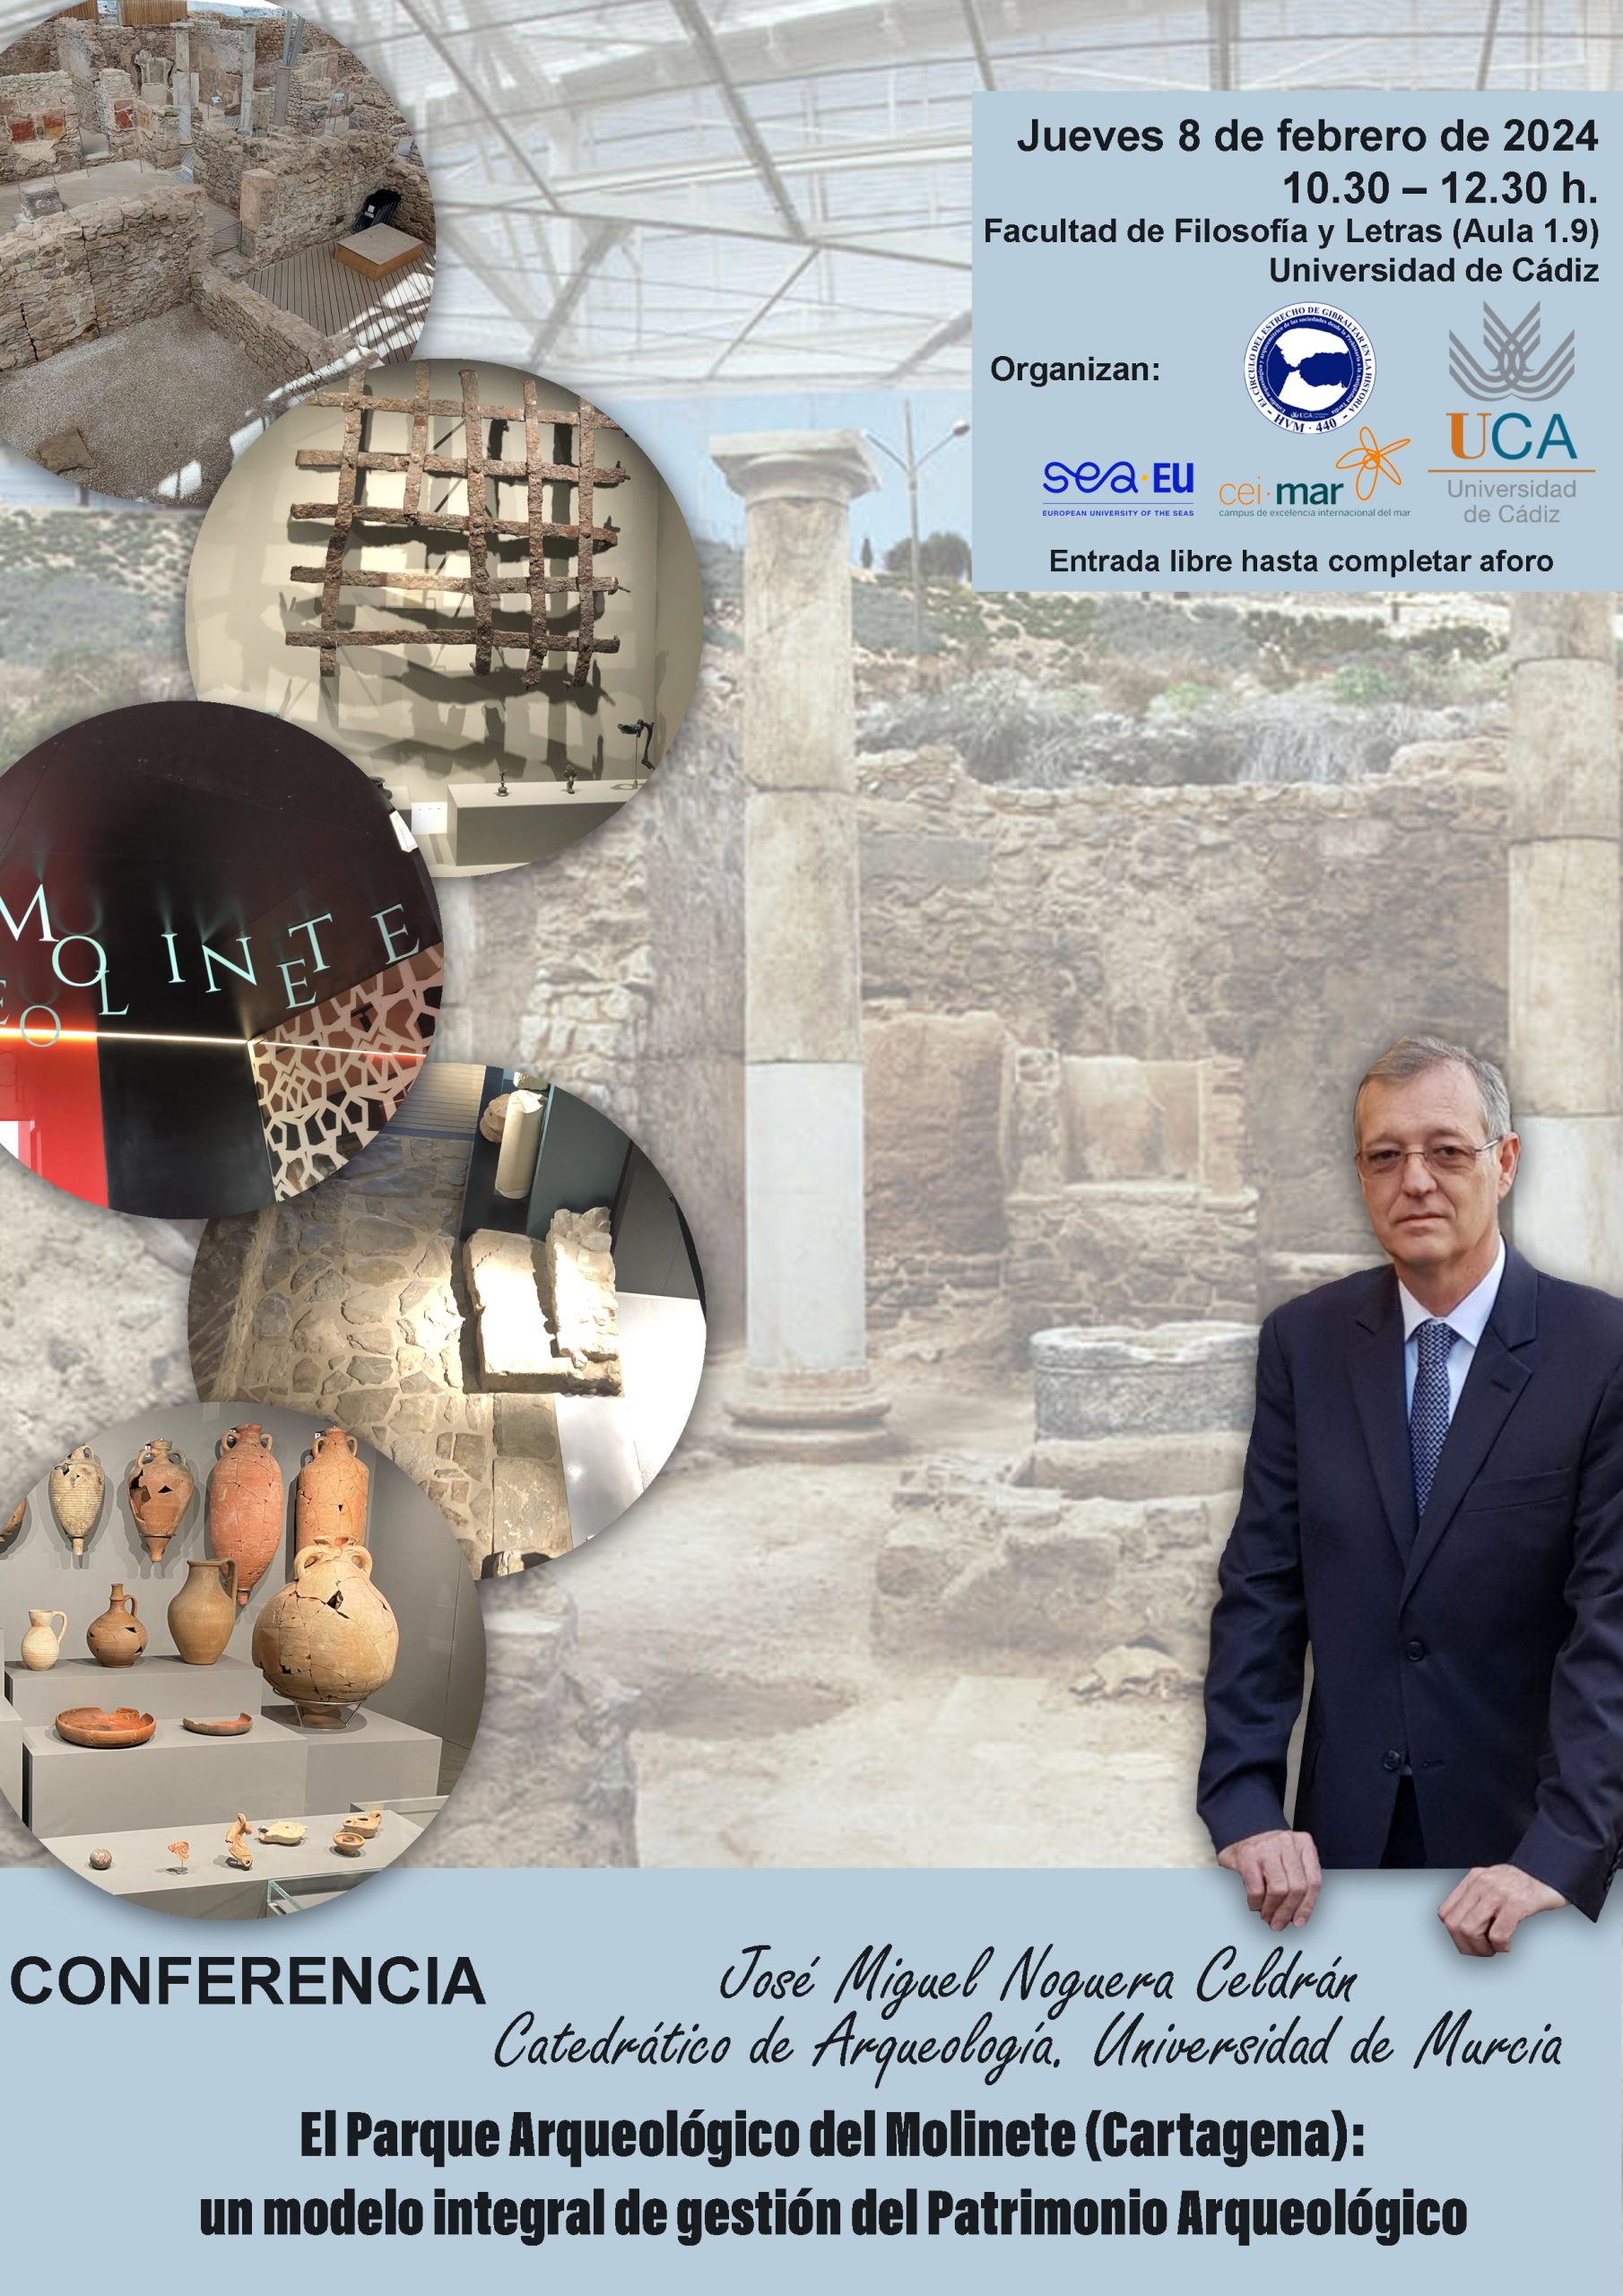 Conferencia de D. José Miguel Noguera Celdrán, Catedrático de Arqueología de la Universidad de Murcia